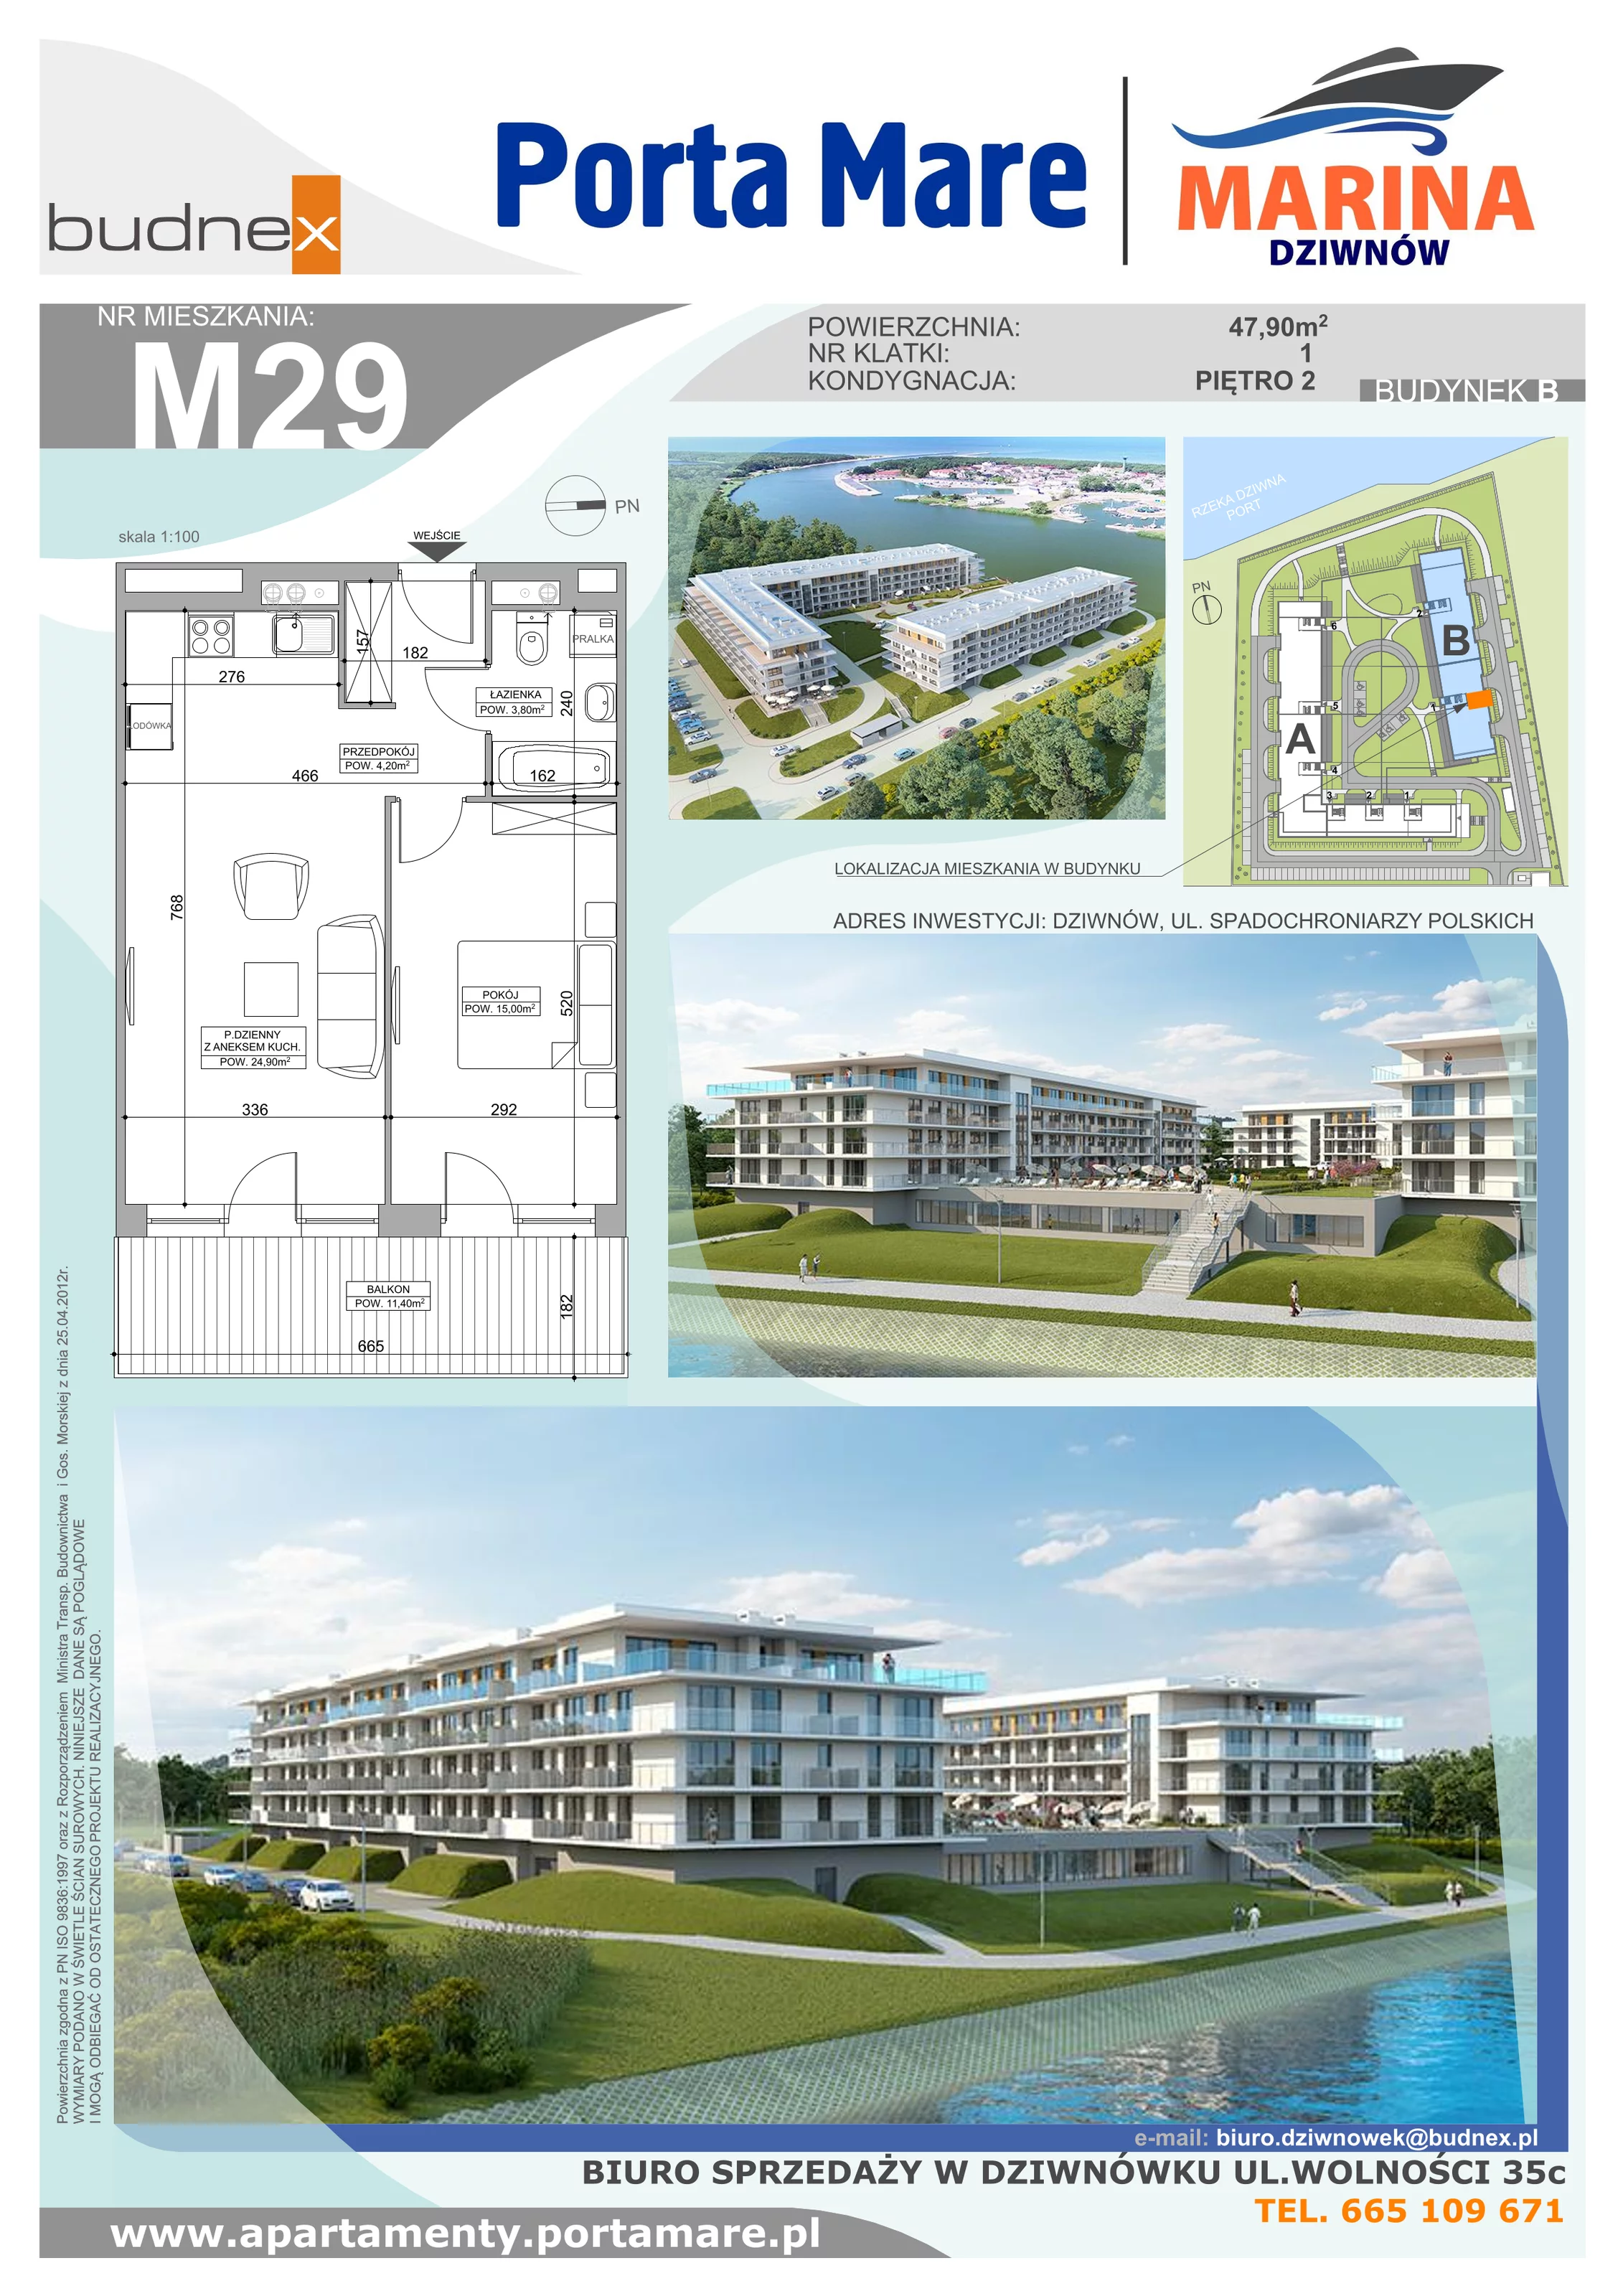 Apartament 47,90 m², piętro 2, oferta nr B.1.M29, Porta Mare MARINA Dziwnów, Dziwnów, ul. Spadochroniarzy Polskich 10